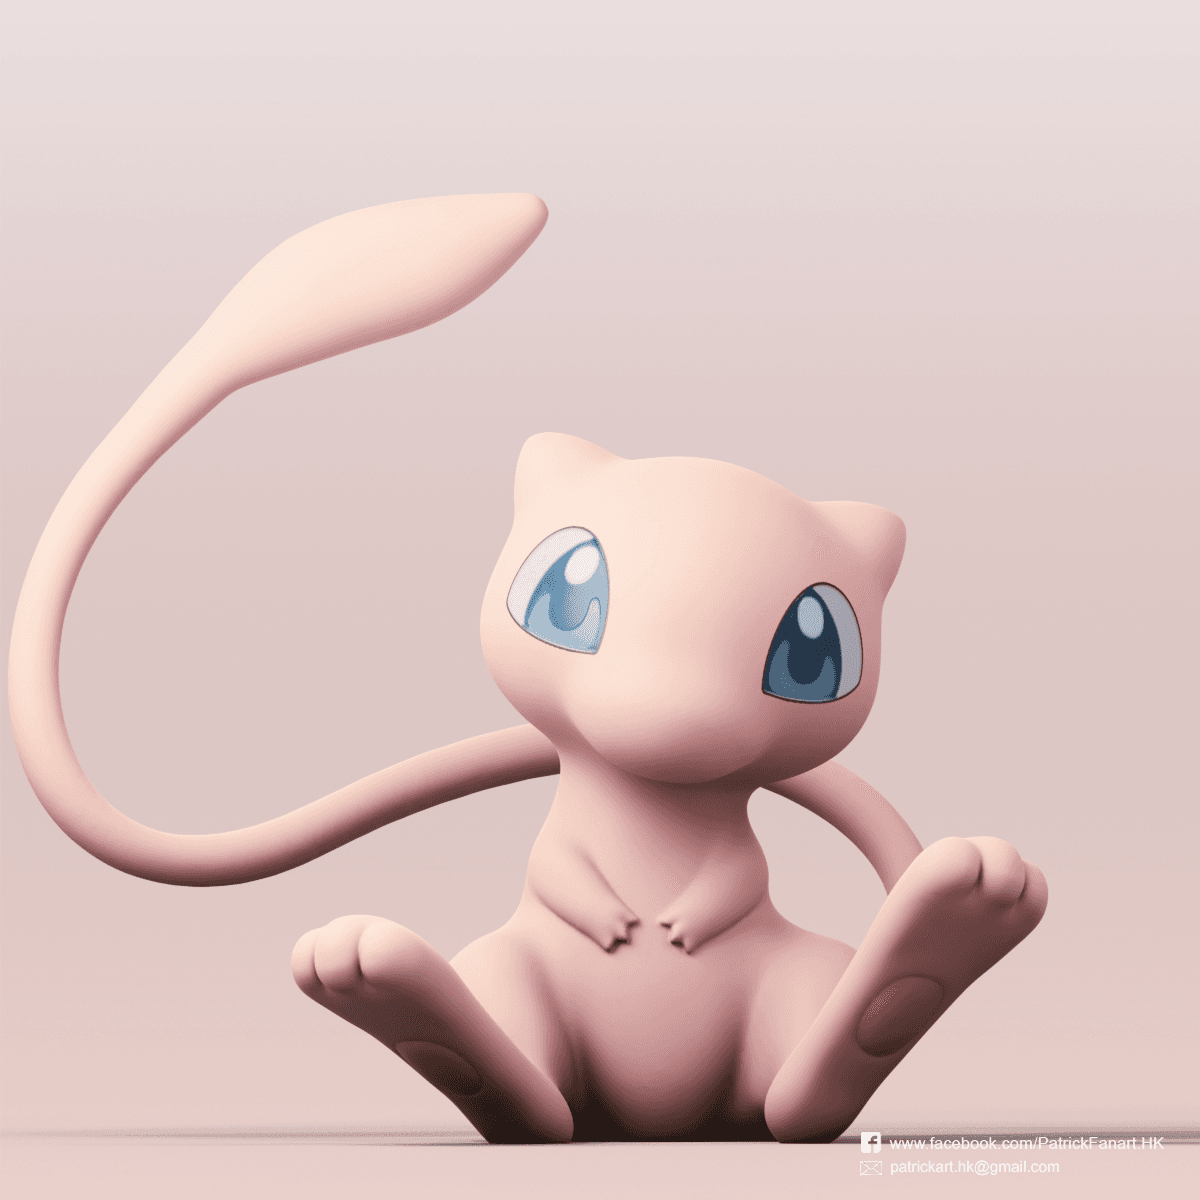 Mew(Pokémon) 3d model